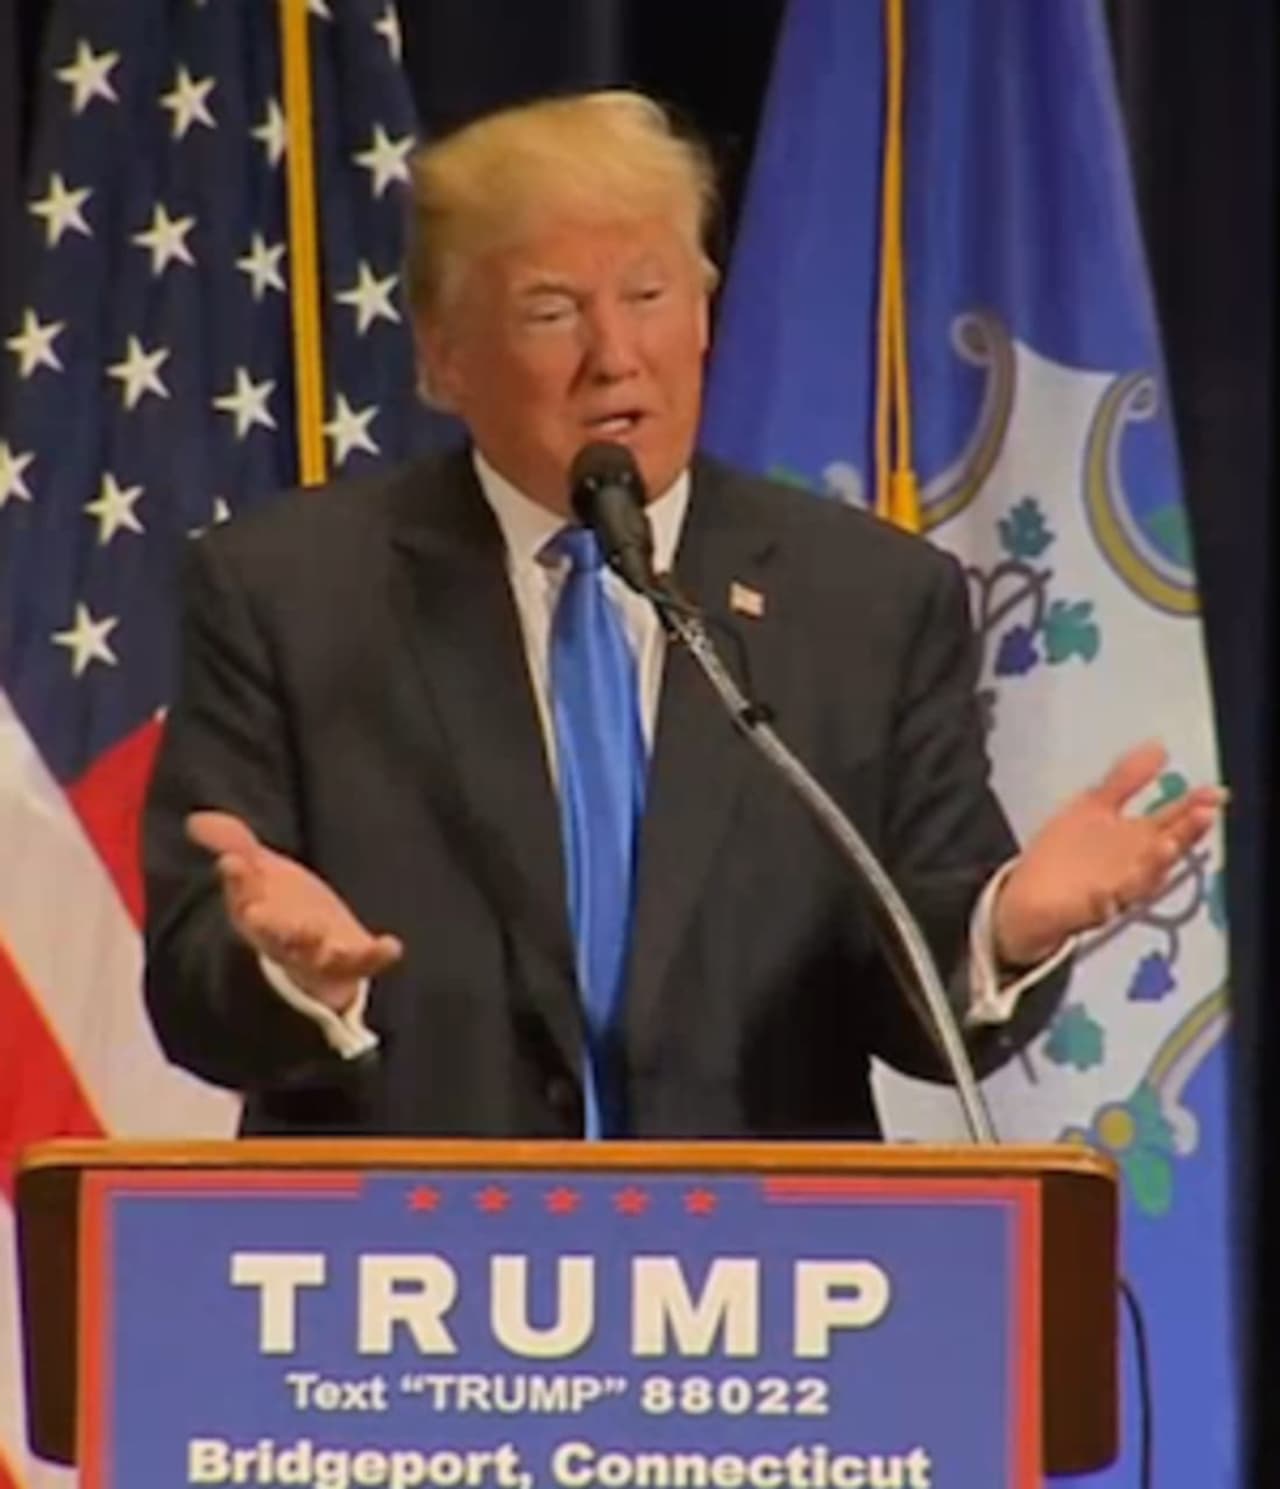 Donald Trump at the podium in Bridgeport